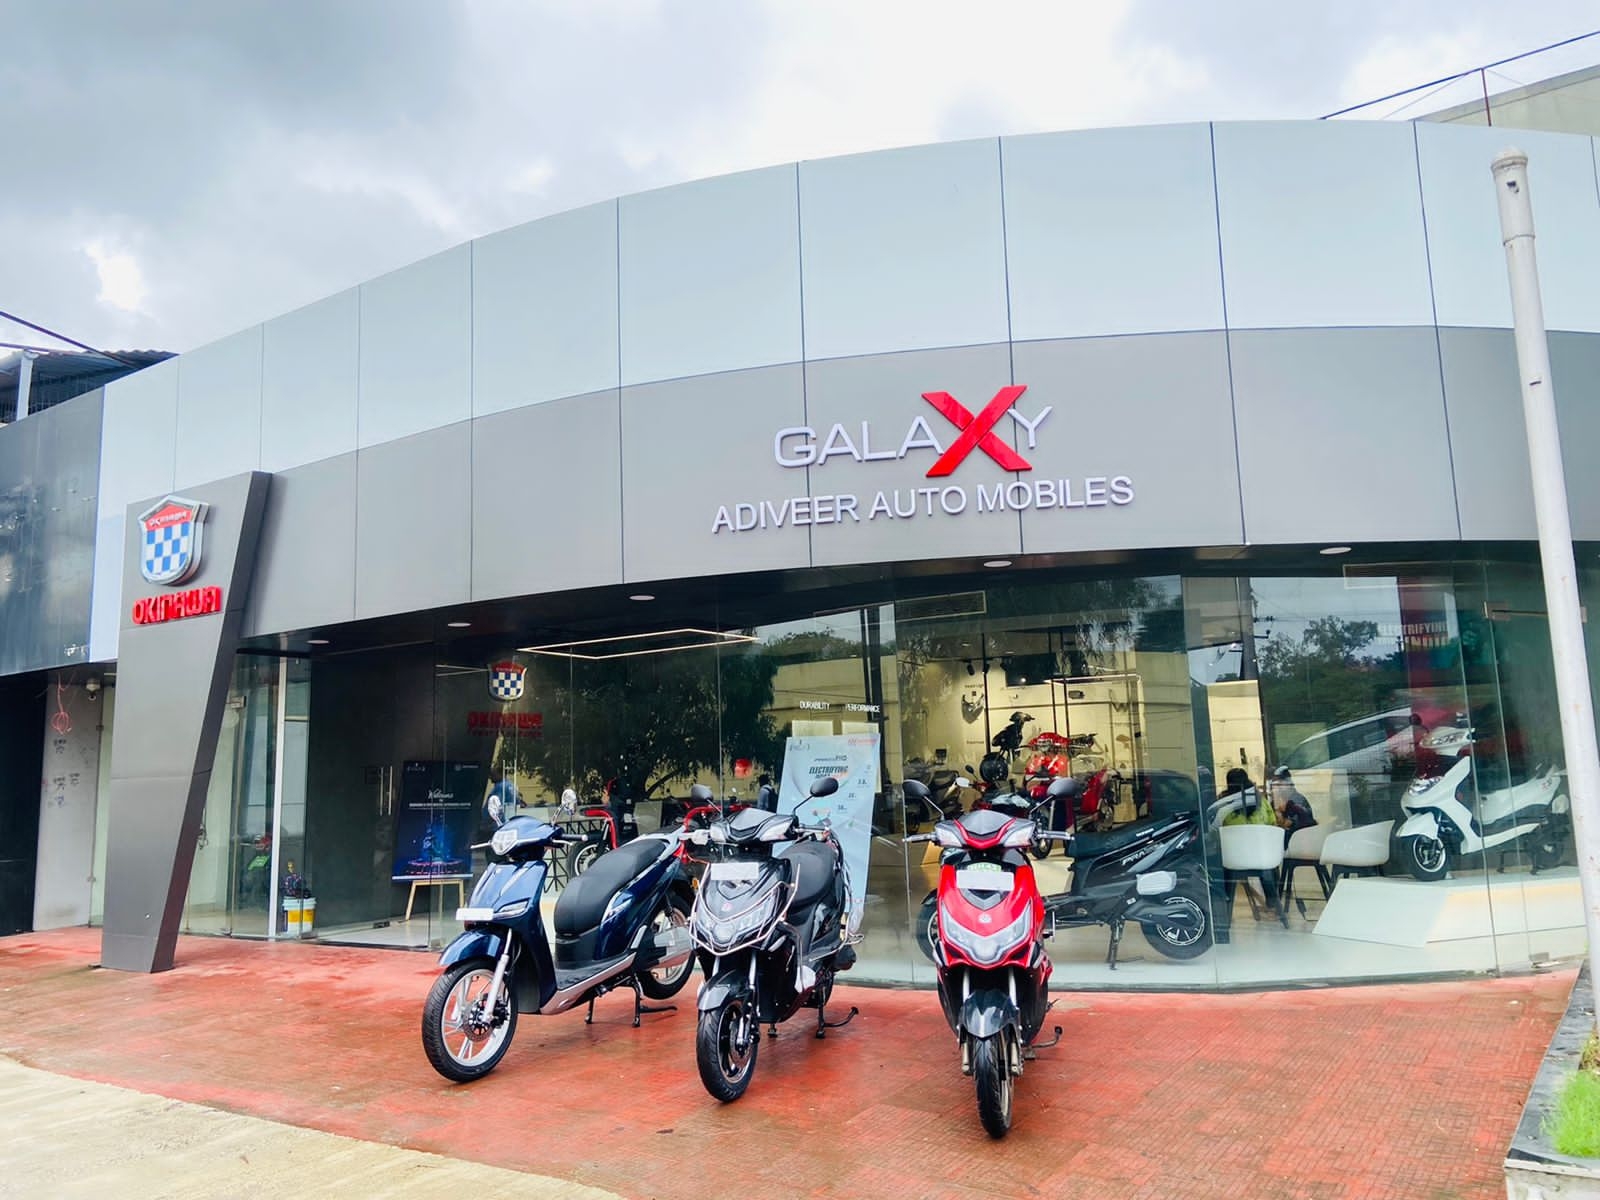 Okinawa Autotech inaugurates a new ultra-modern Galaxy store in Nerul, Navi Mumbai news